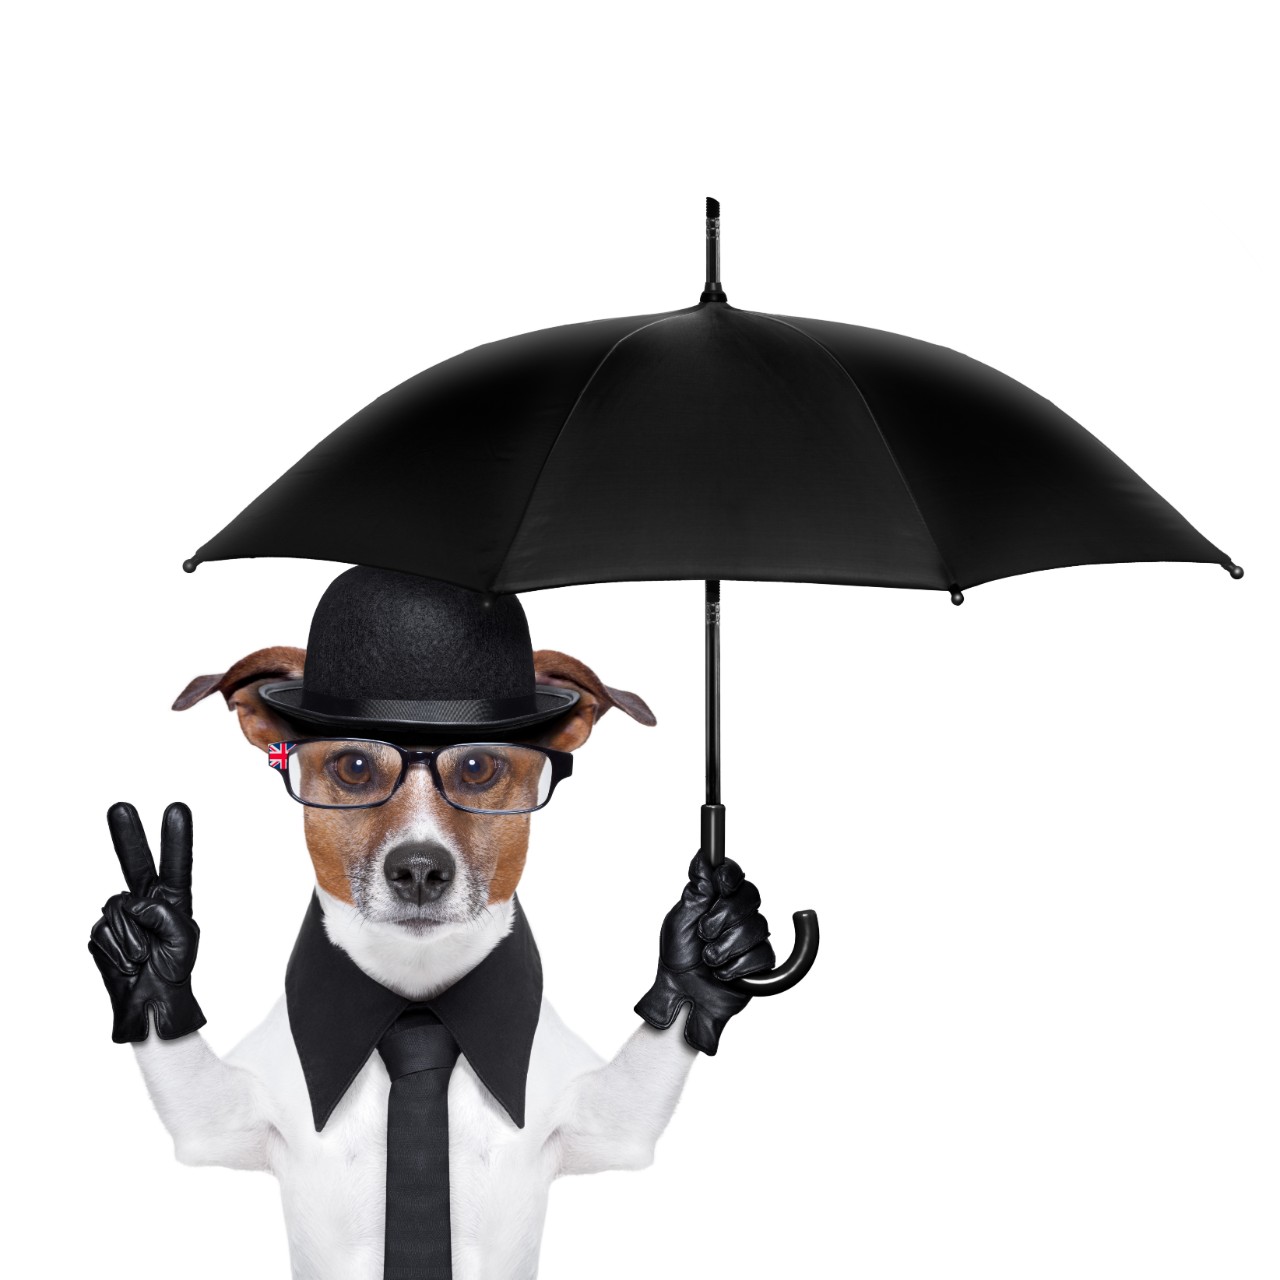 5 Best Dog Umbrella in 2020